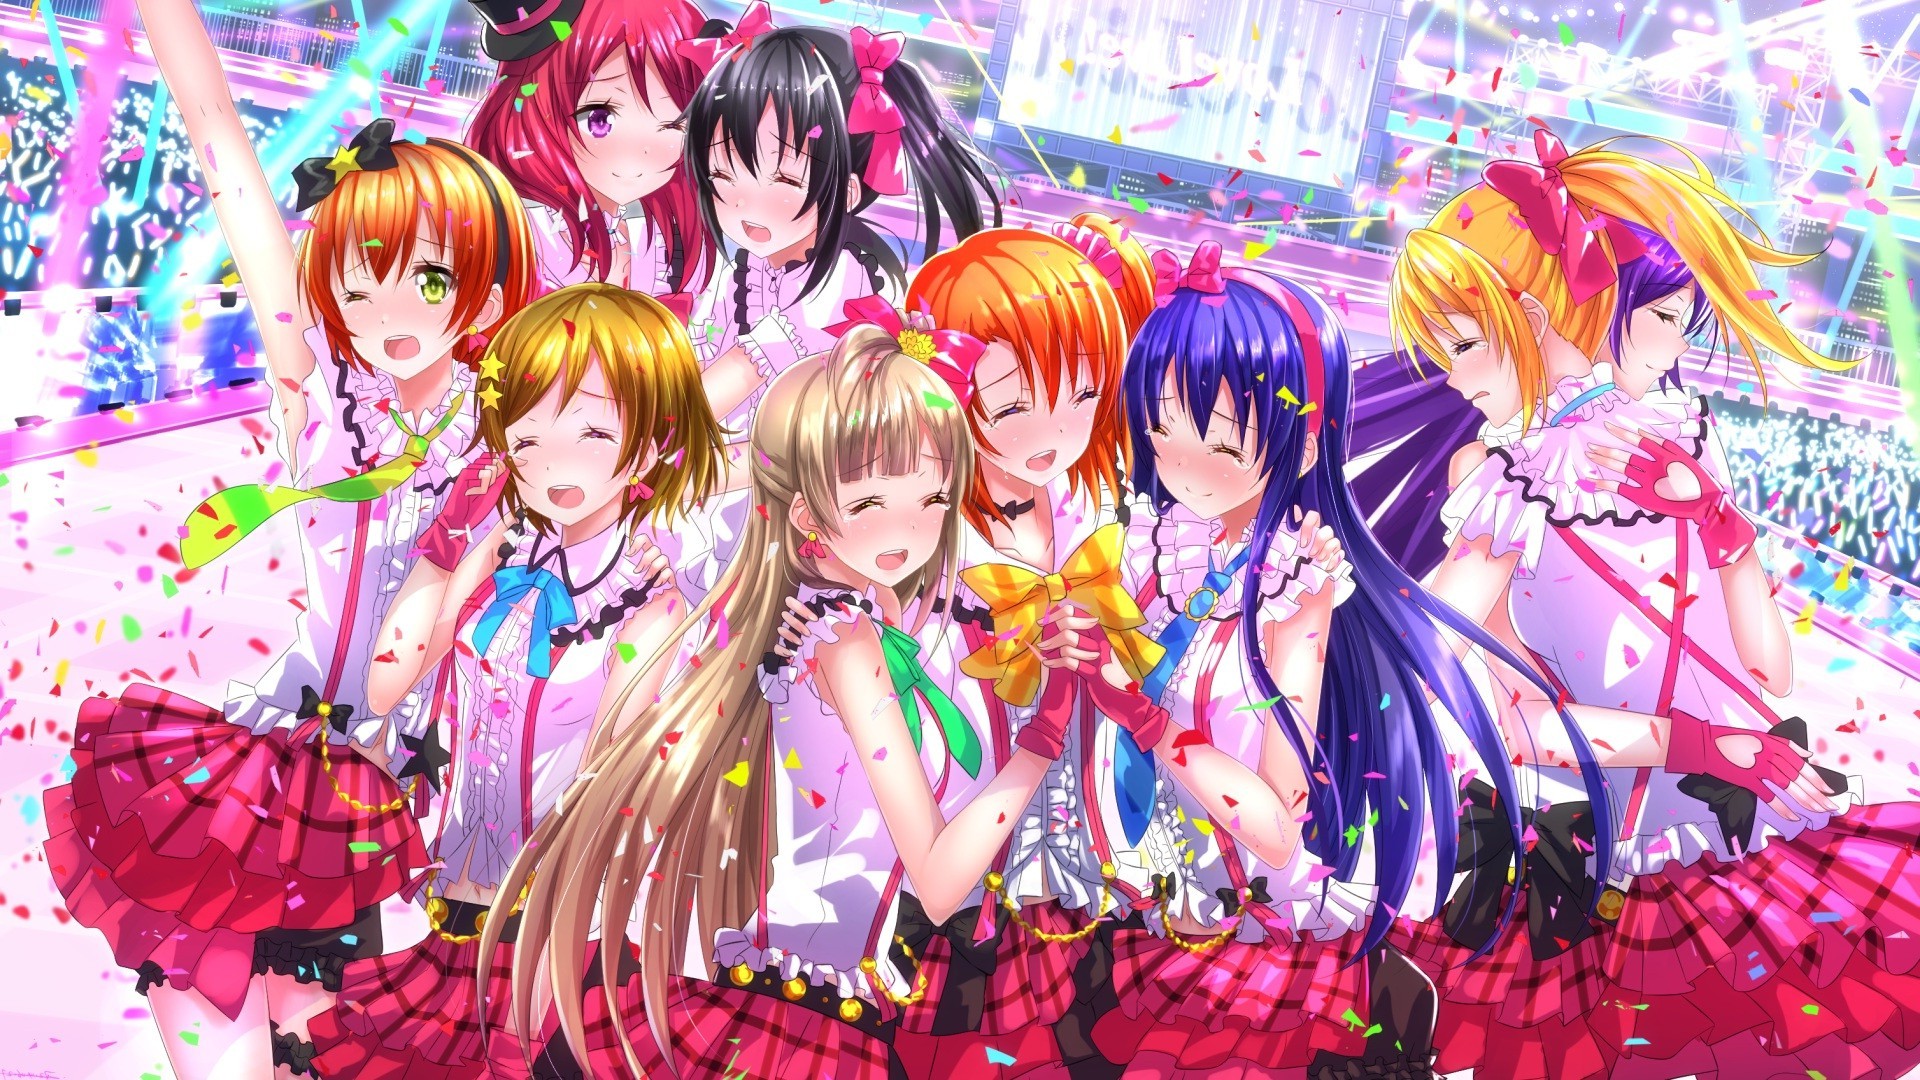 Yazawa Nico, Love Live!, Sonoda Umi, Nishikino Maki, Minami Kotori, Ayase Eri, Hoshizora Rin, Koizumi Hanayo, Kousaka Honoka, Toujou Nozomi, Anime, Anime Girls Wallpaper